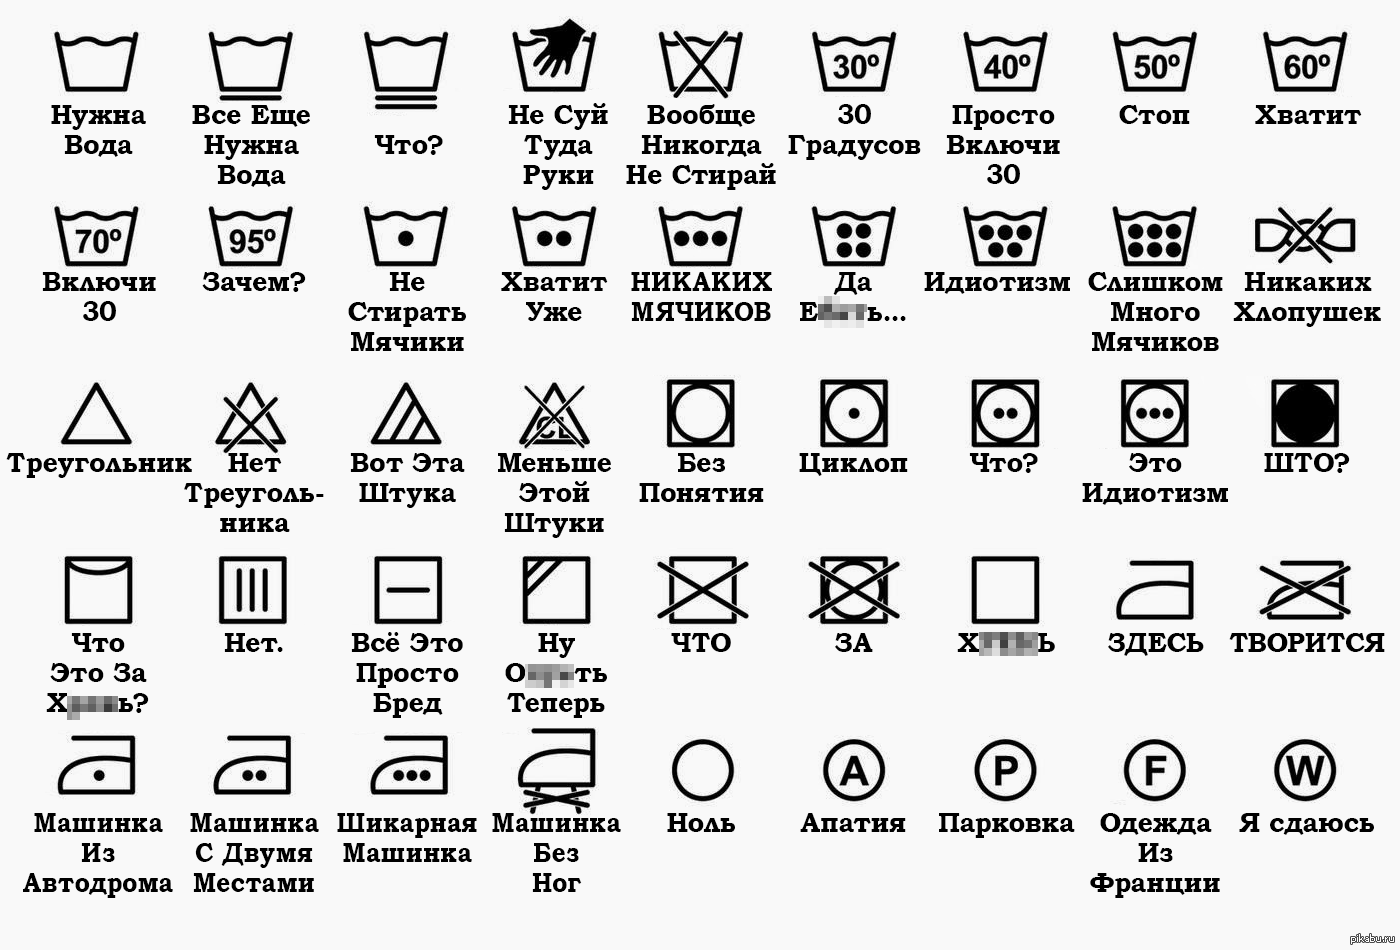 Значки на одежде для стирки: расшифровка ярлыков, подробная таблица символов и их обозначений + фото